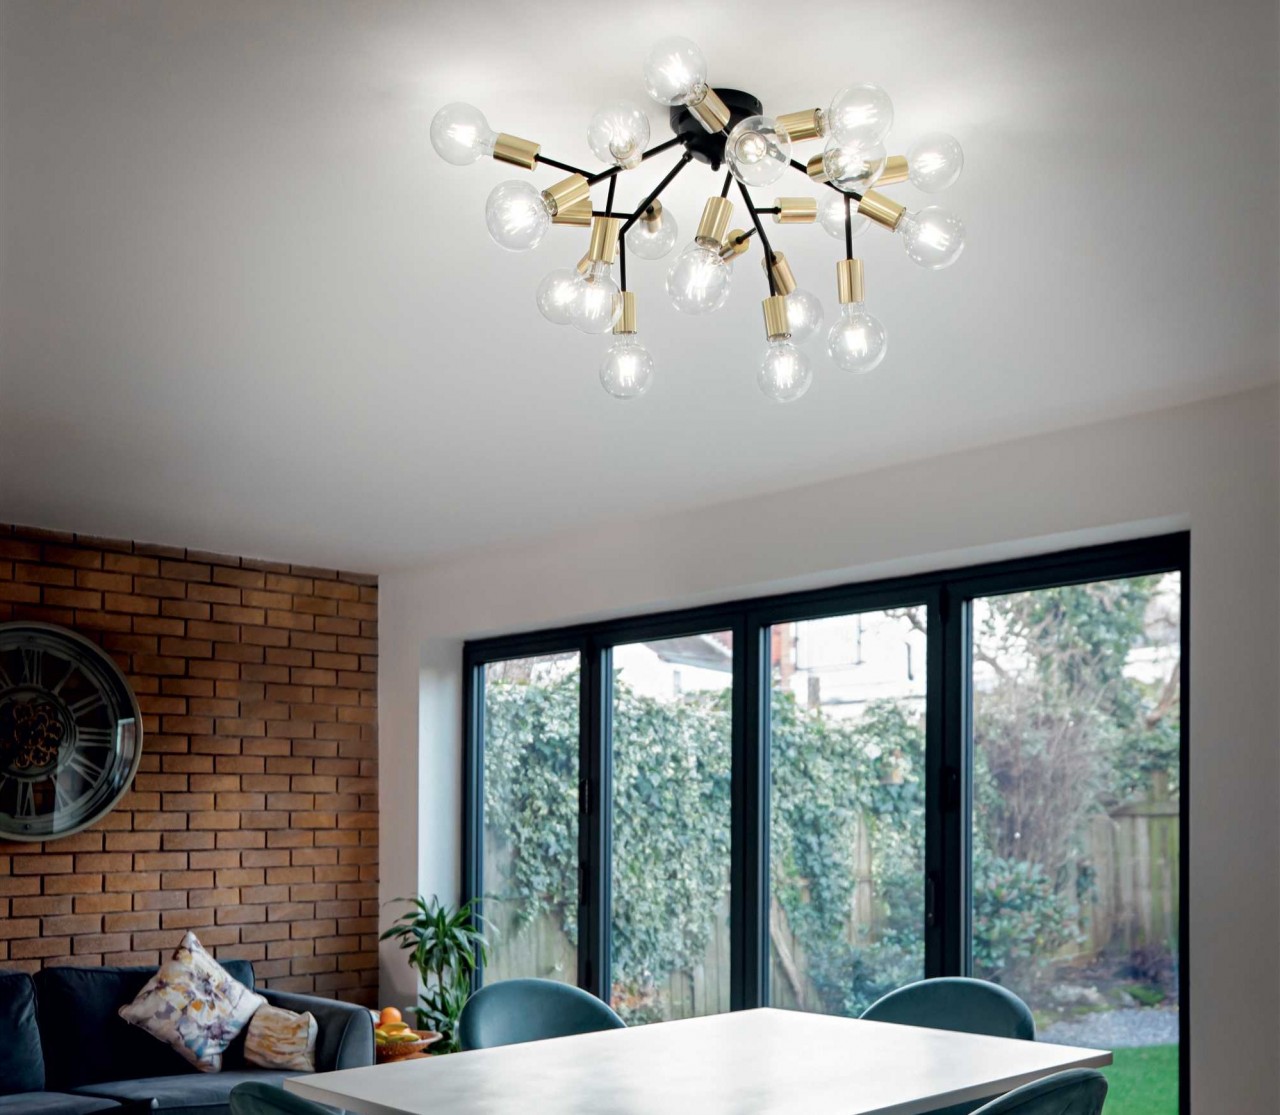 O plafon Spark é a escolha ideal para espaços iluminados com elegância e modernidade. Com design minimalista, proporciona luz direta e uniforme, criando um ambiente acolhedor.